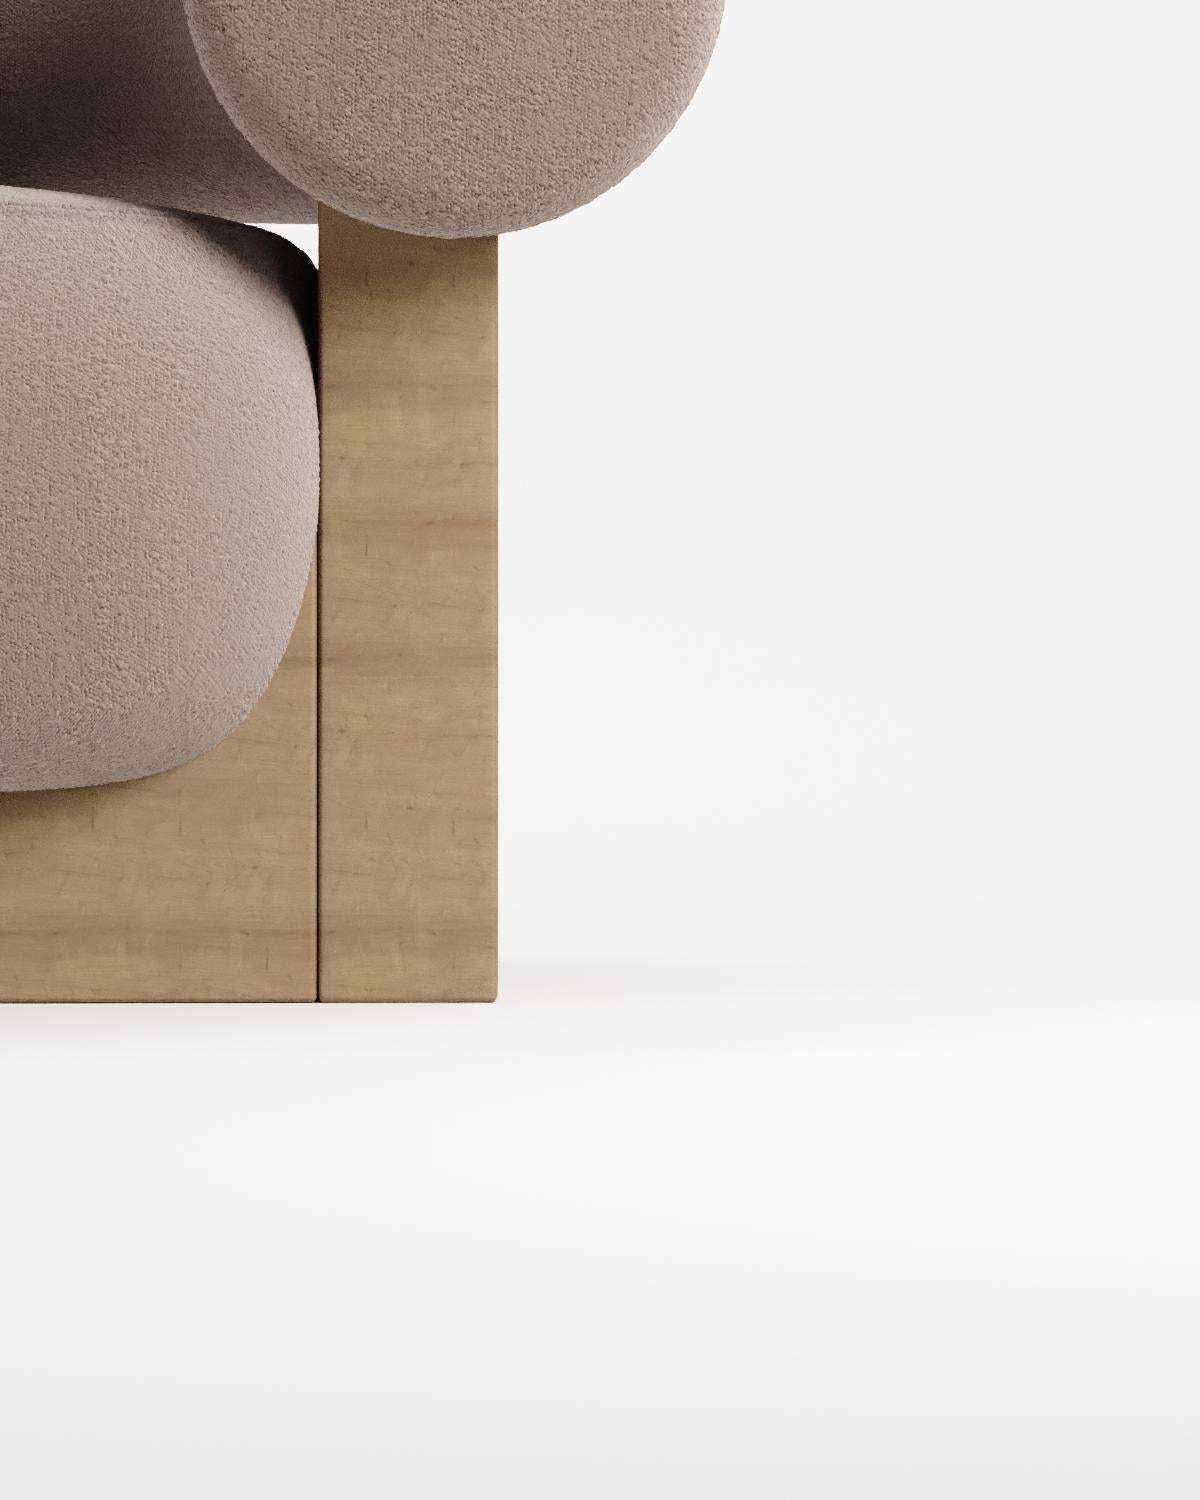 Der Sessel Cassete wurde von Alter Ego für Collector entworfen.

Untermauert von einer minimalistischen und raffinierten Ästhetik mit klaren Linien.

ABMESSUNGEN
B 110 cm 43